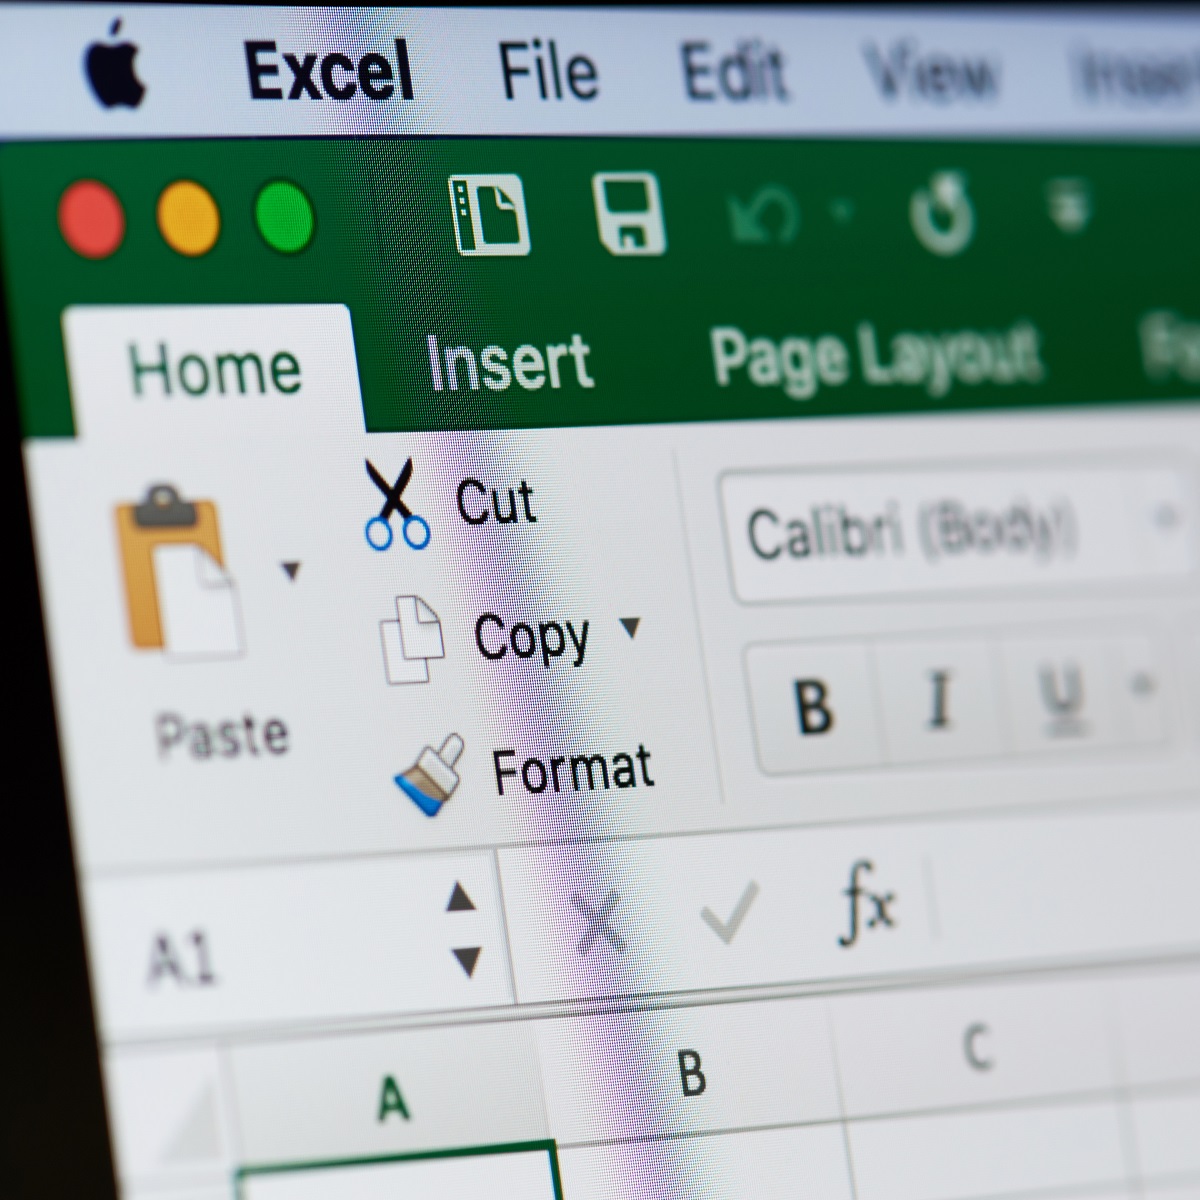 KORRIGERA: Excel-kalkylbladet har inte filtrerats ordentligt